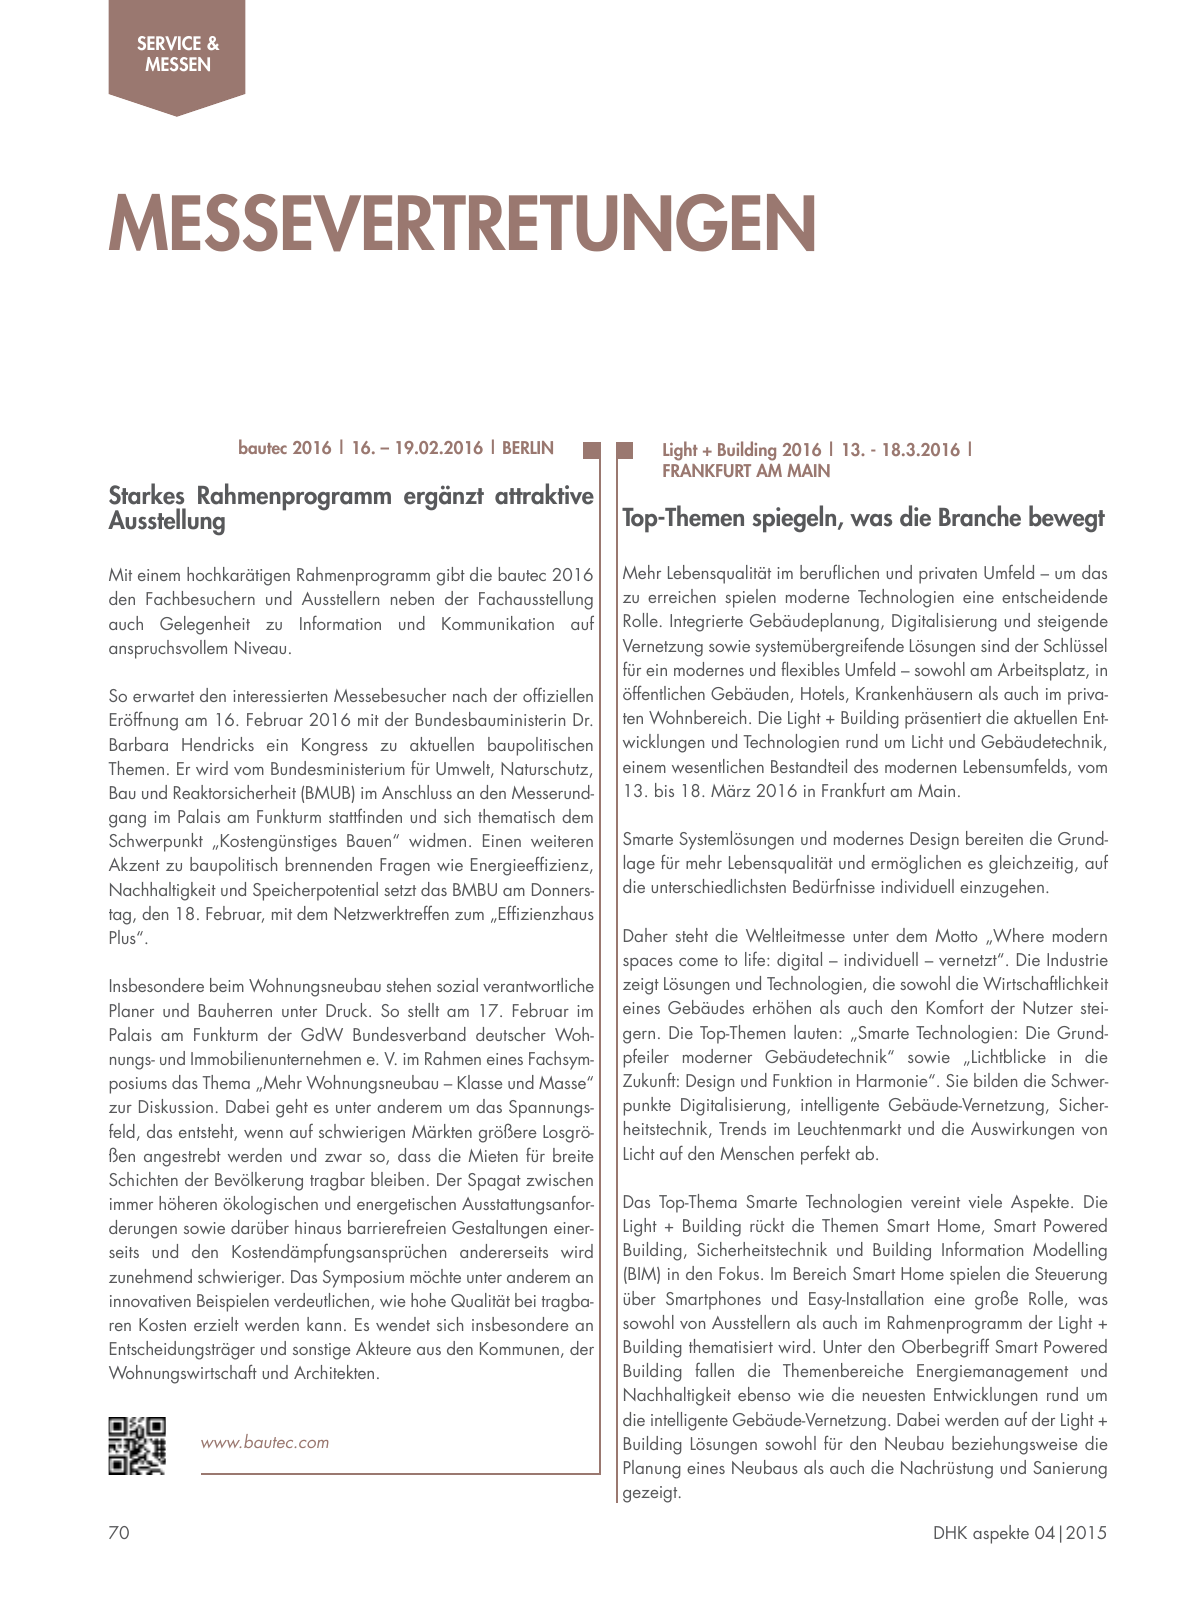 Vorschau Aspekte 04/2015 Seite 70